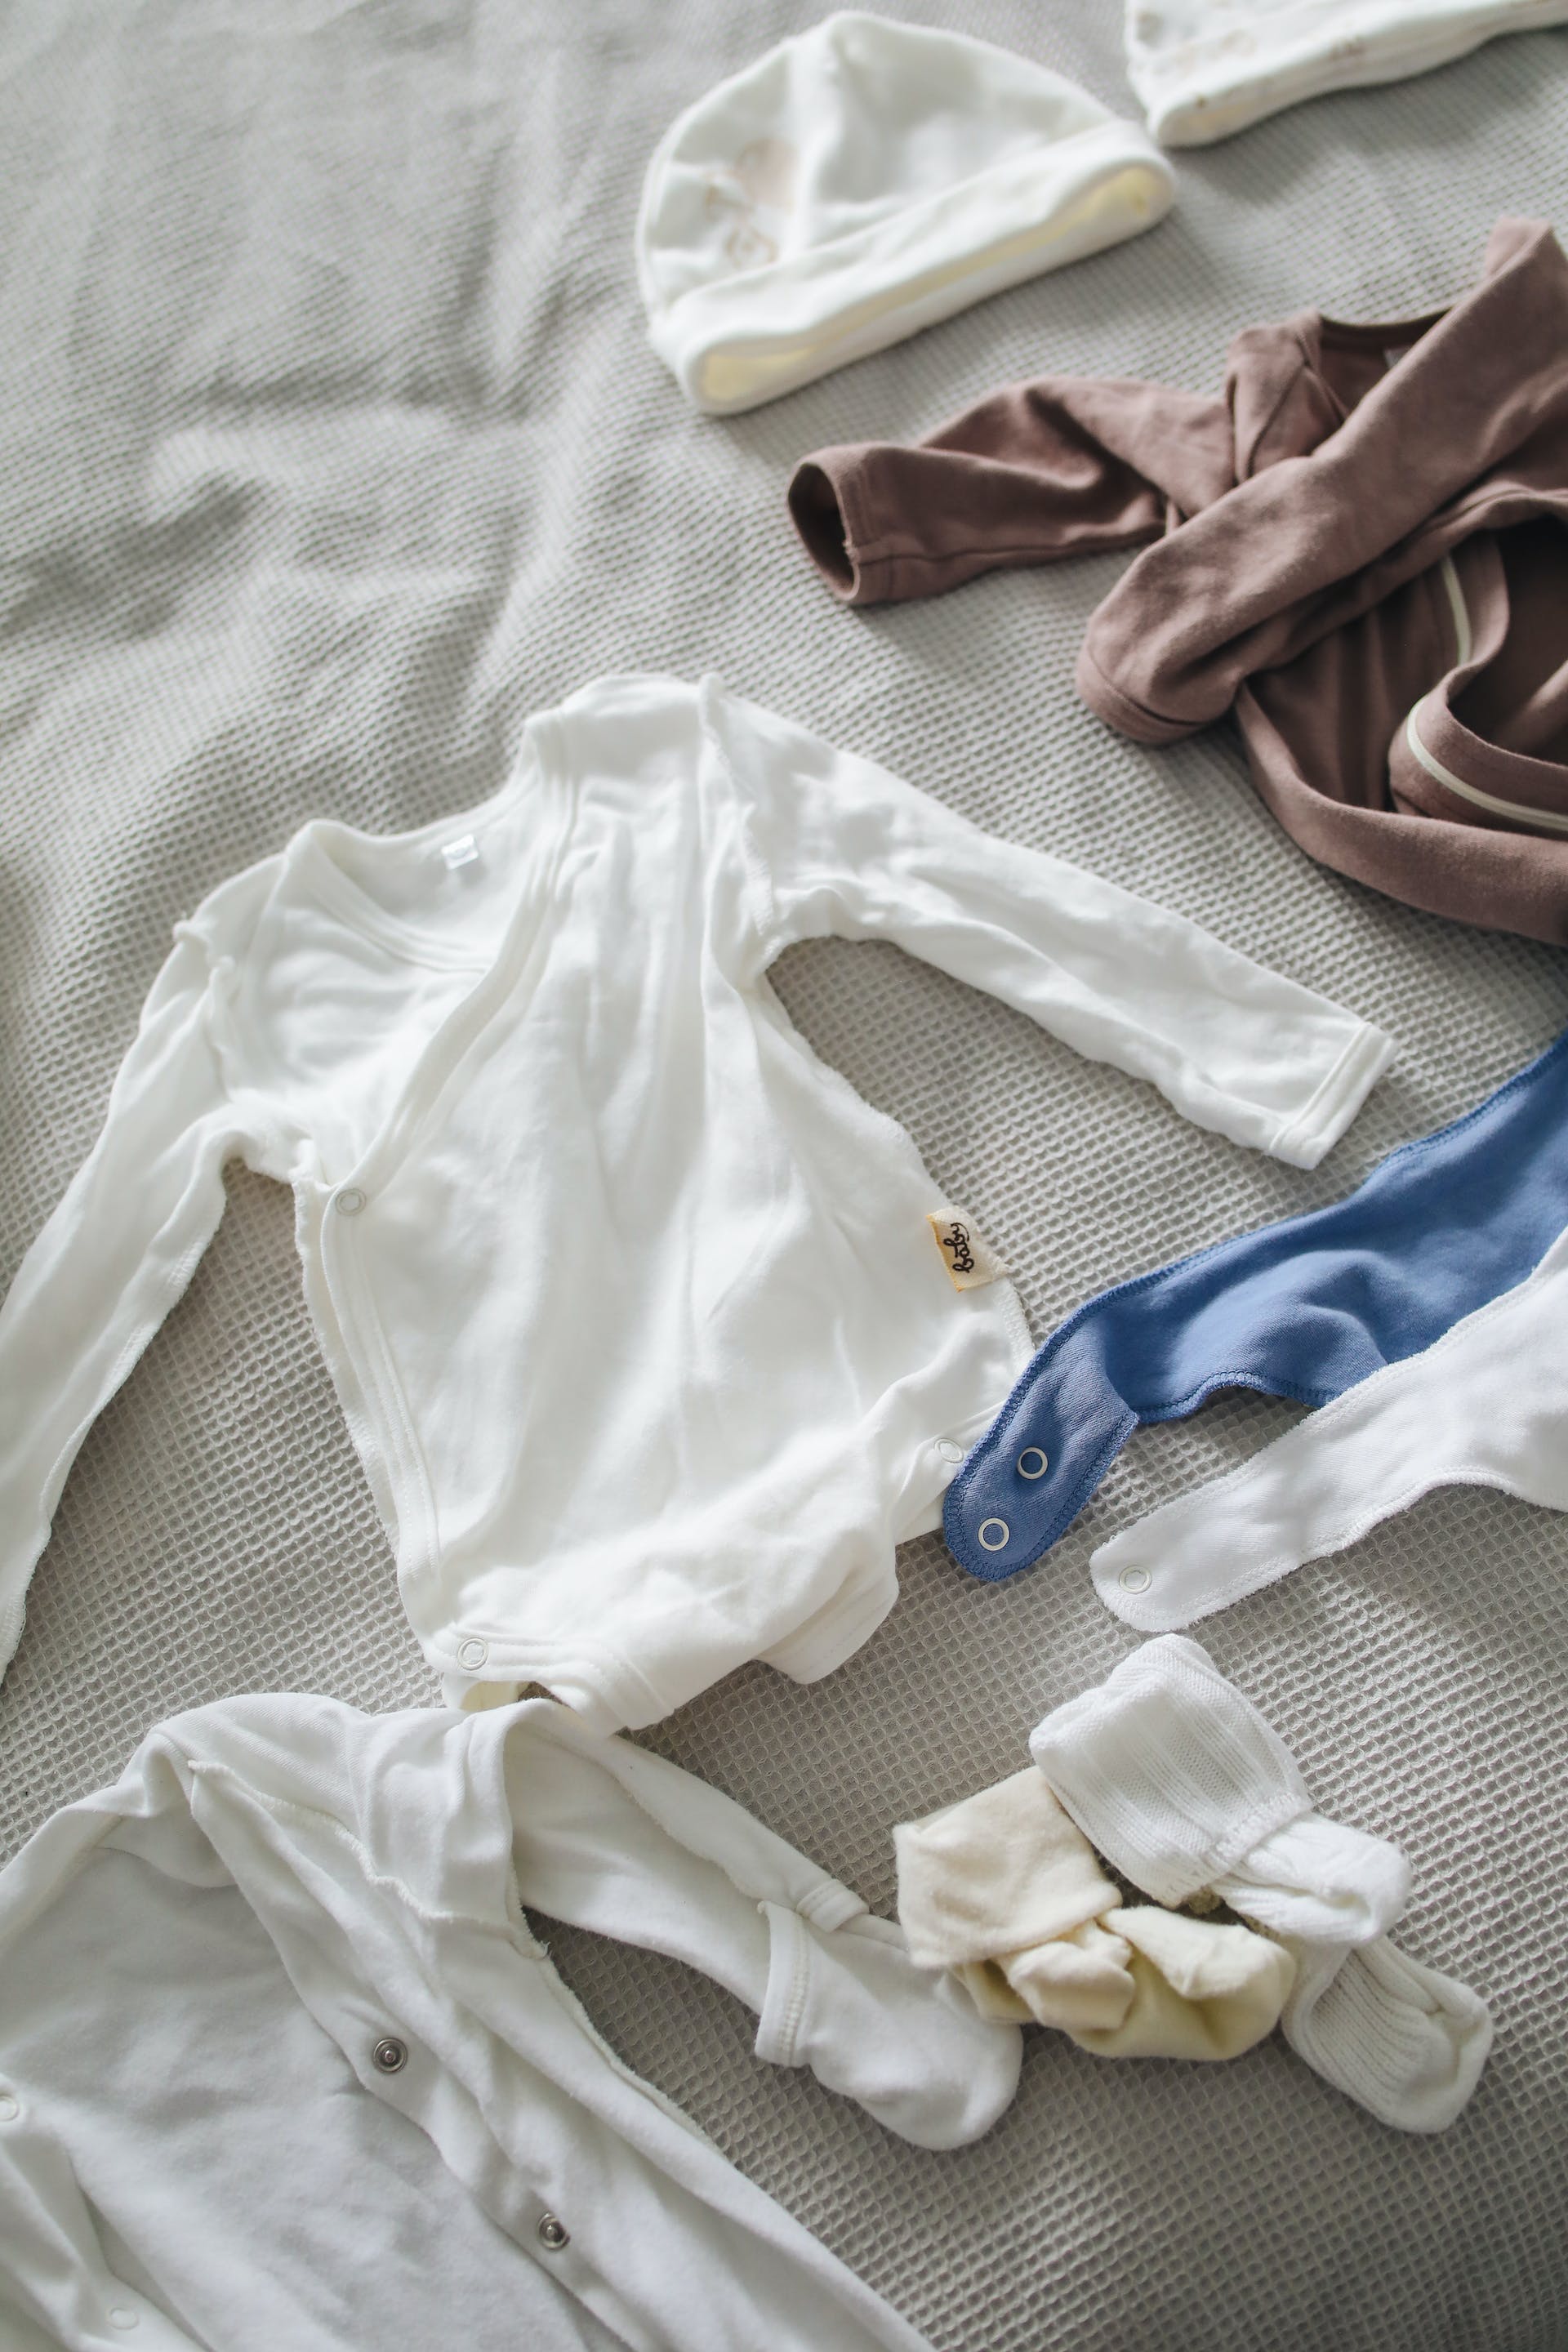 Vêtements de bébé | Source : Pexels